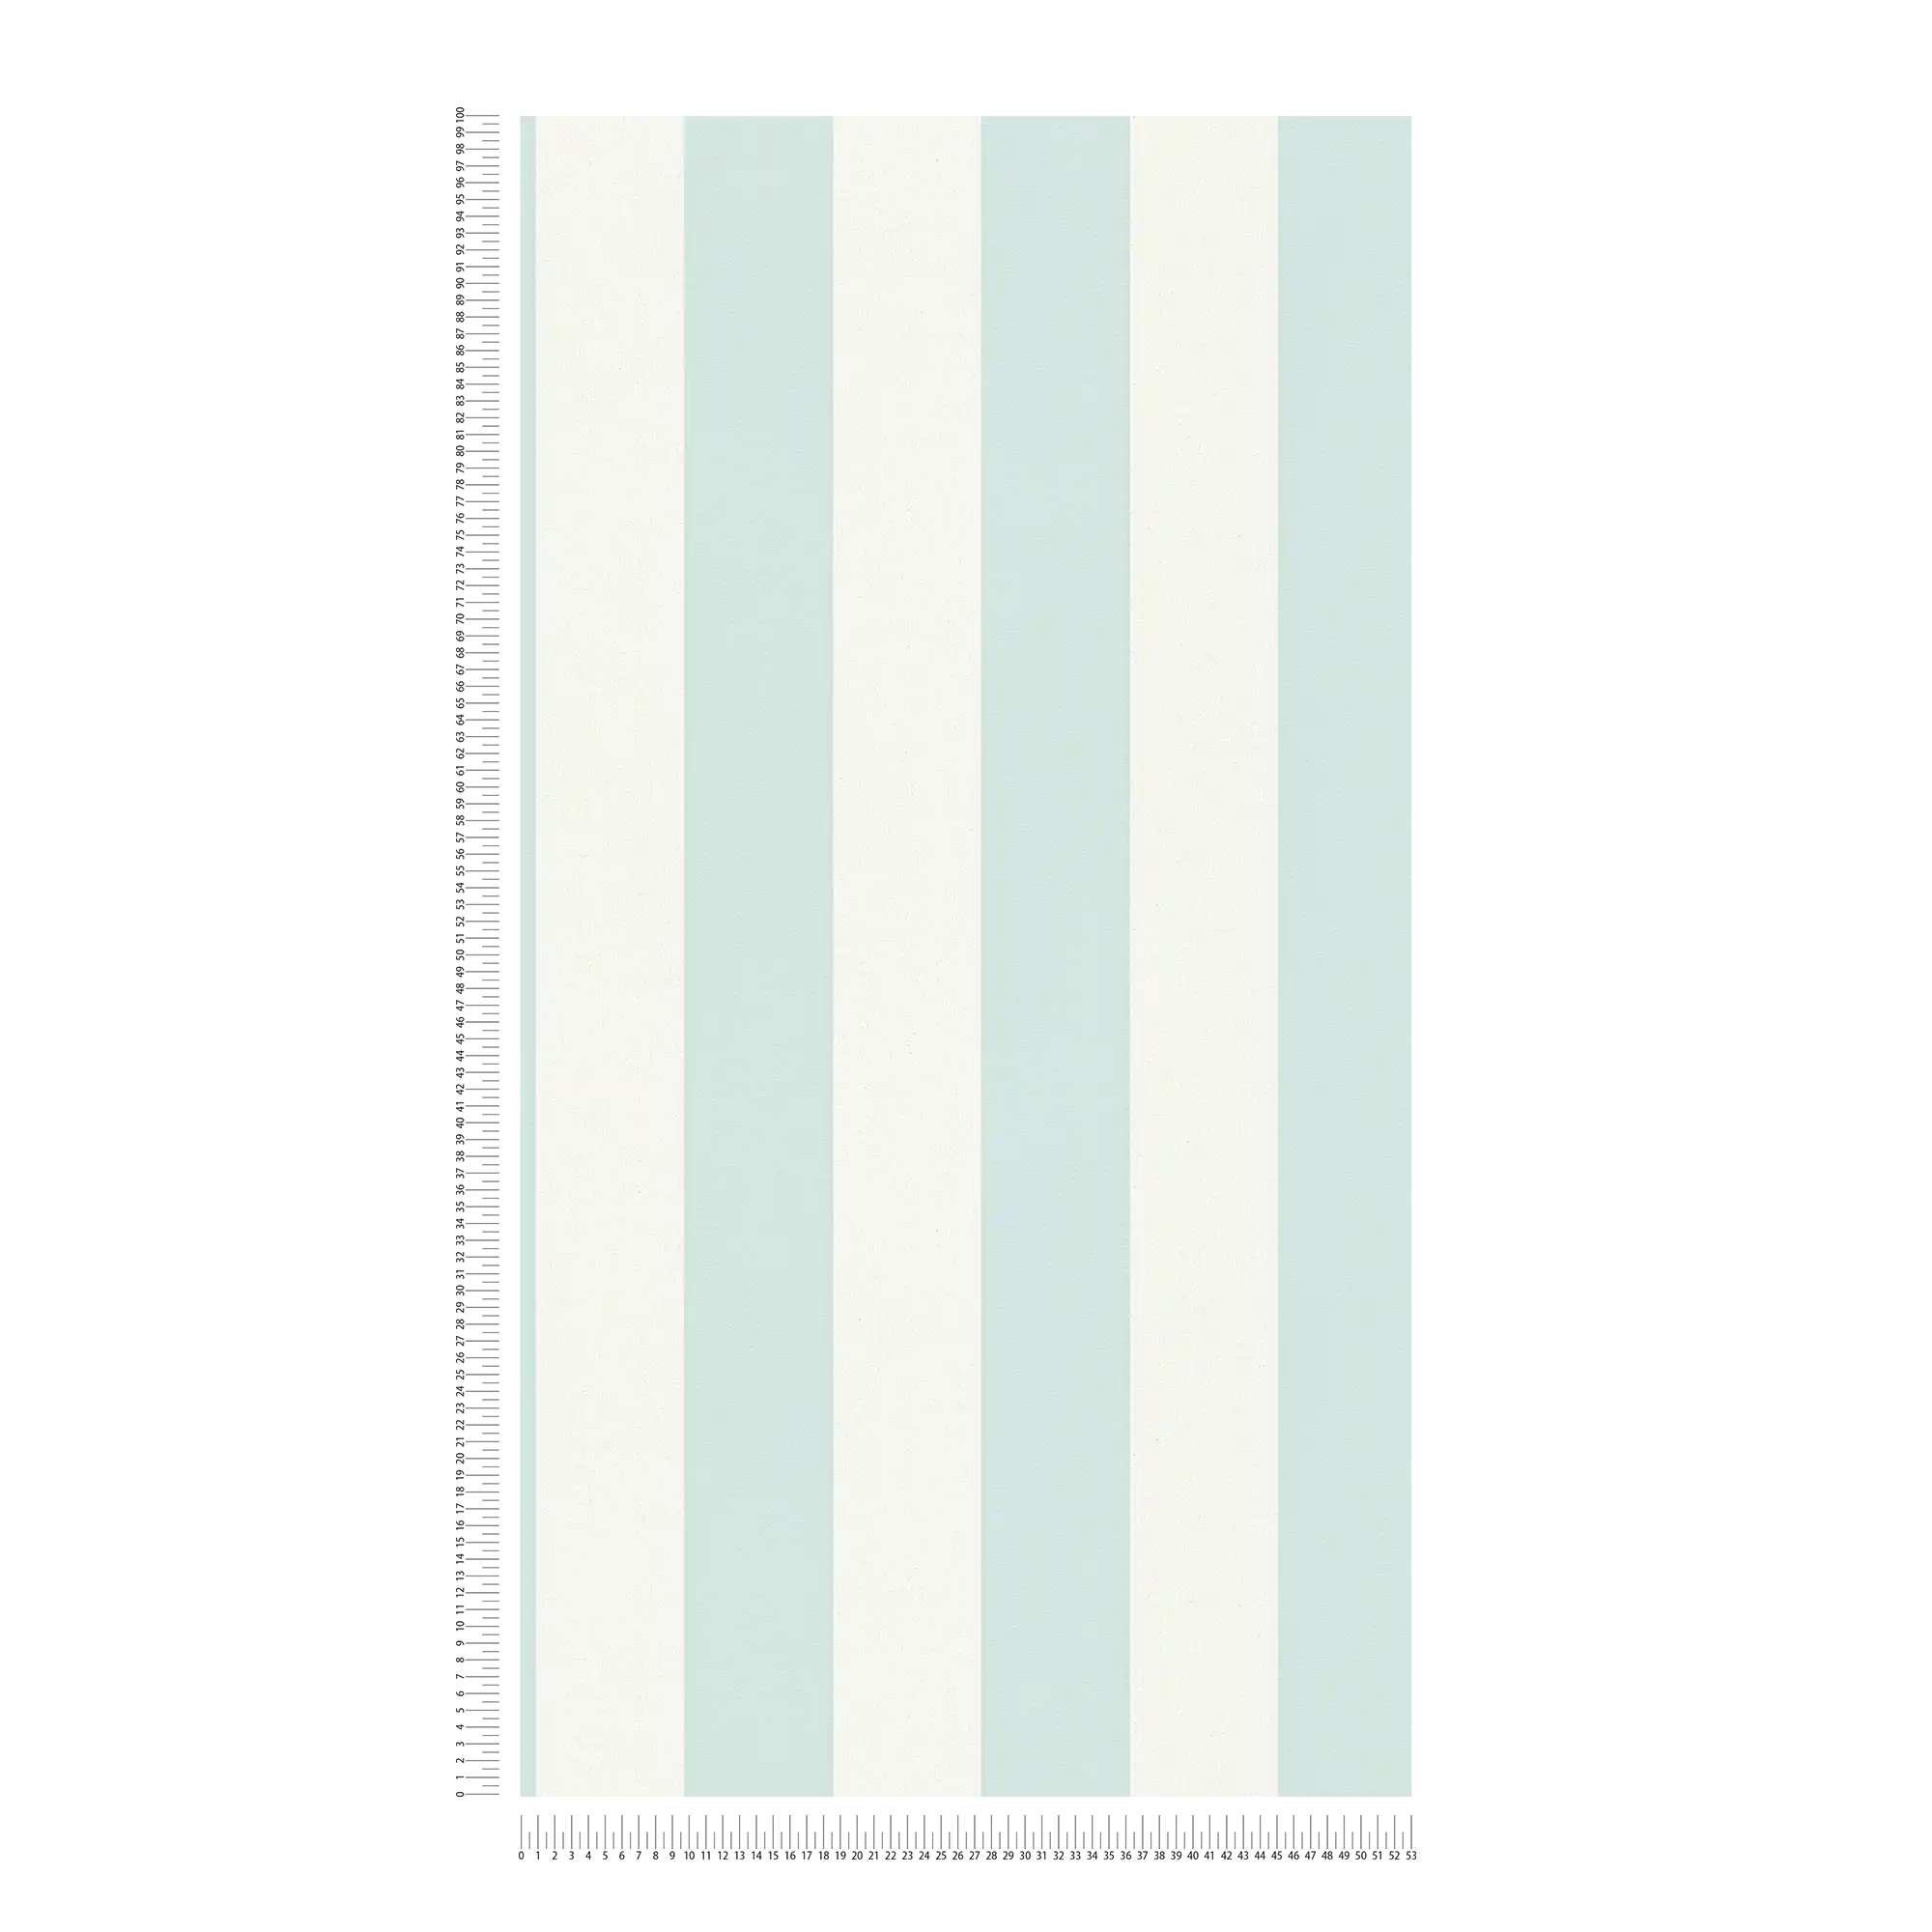             Papel pintado de rayas con textura, rayas en bloque azul y blanco
        